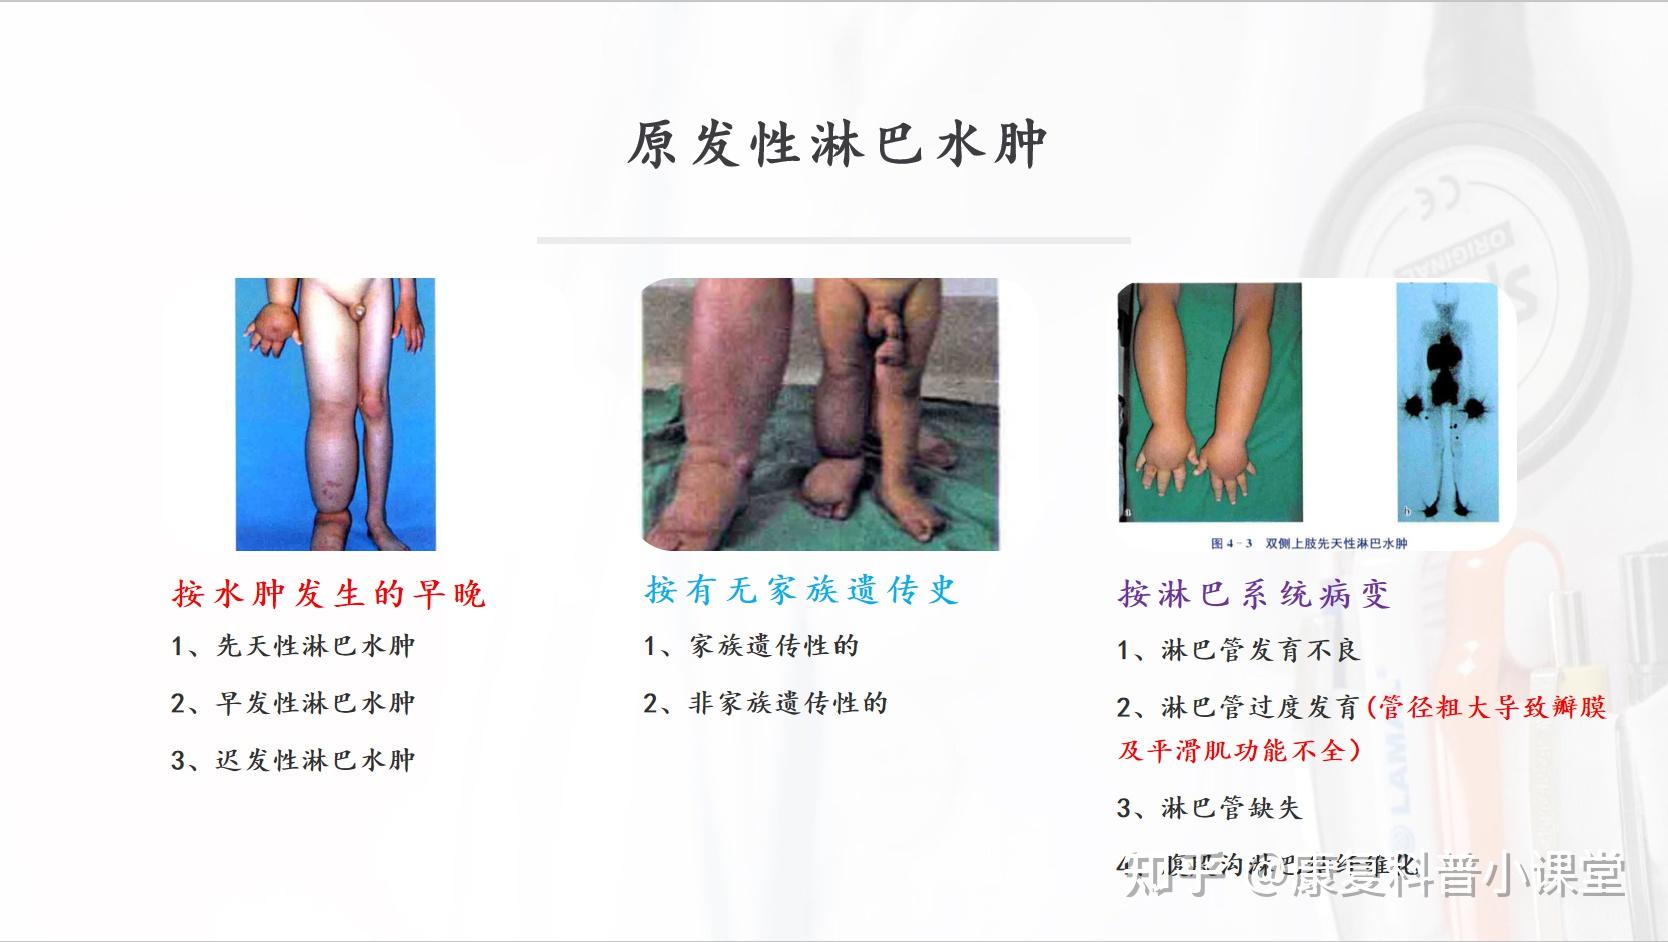 案例5:胫前粘液性水肿如何治疗？附7例重症典型患者治疗照片对照_下肢淋巴水肿_下肢淋巴水肿介绍 - 好大夫在线